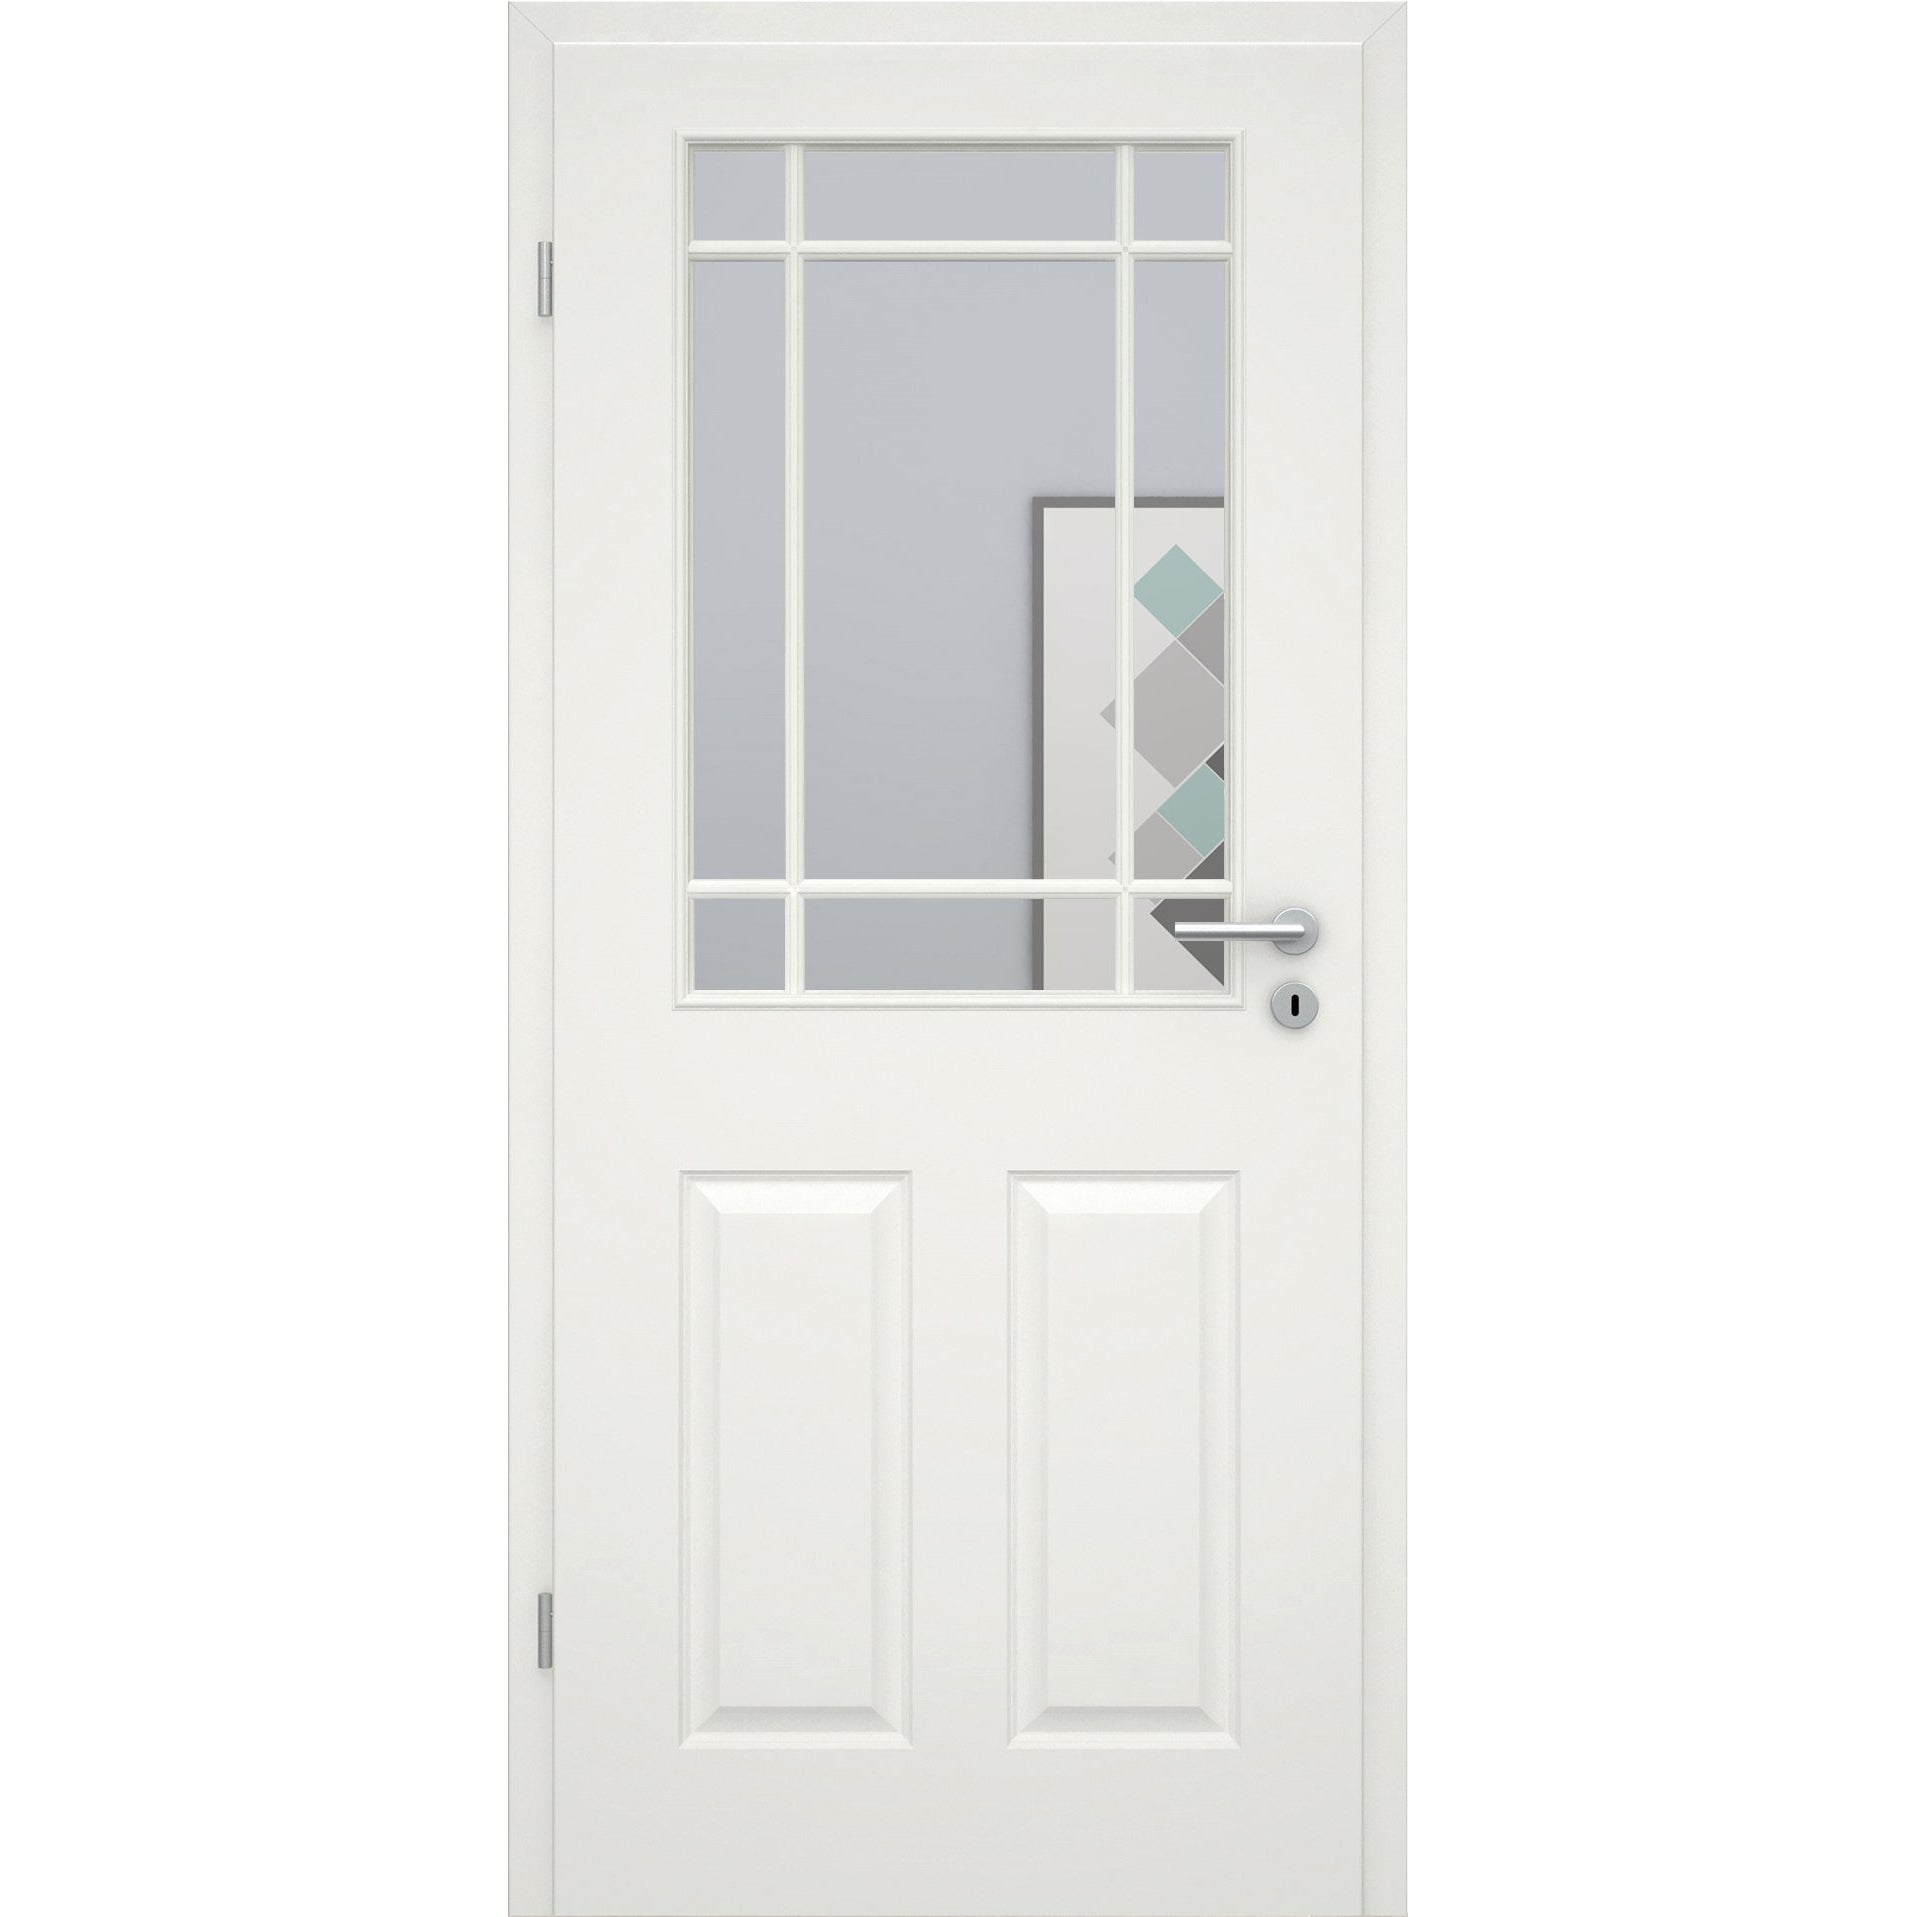 Zimmertür mit Lichtausschnitt mit Sprossenrahmen klassisch soft-weiß 4 Kassetten Eckkante - Modell Stiltür K41LASPK